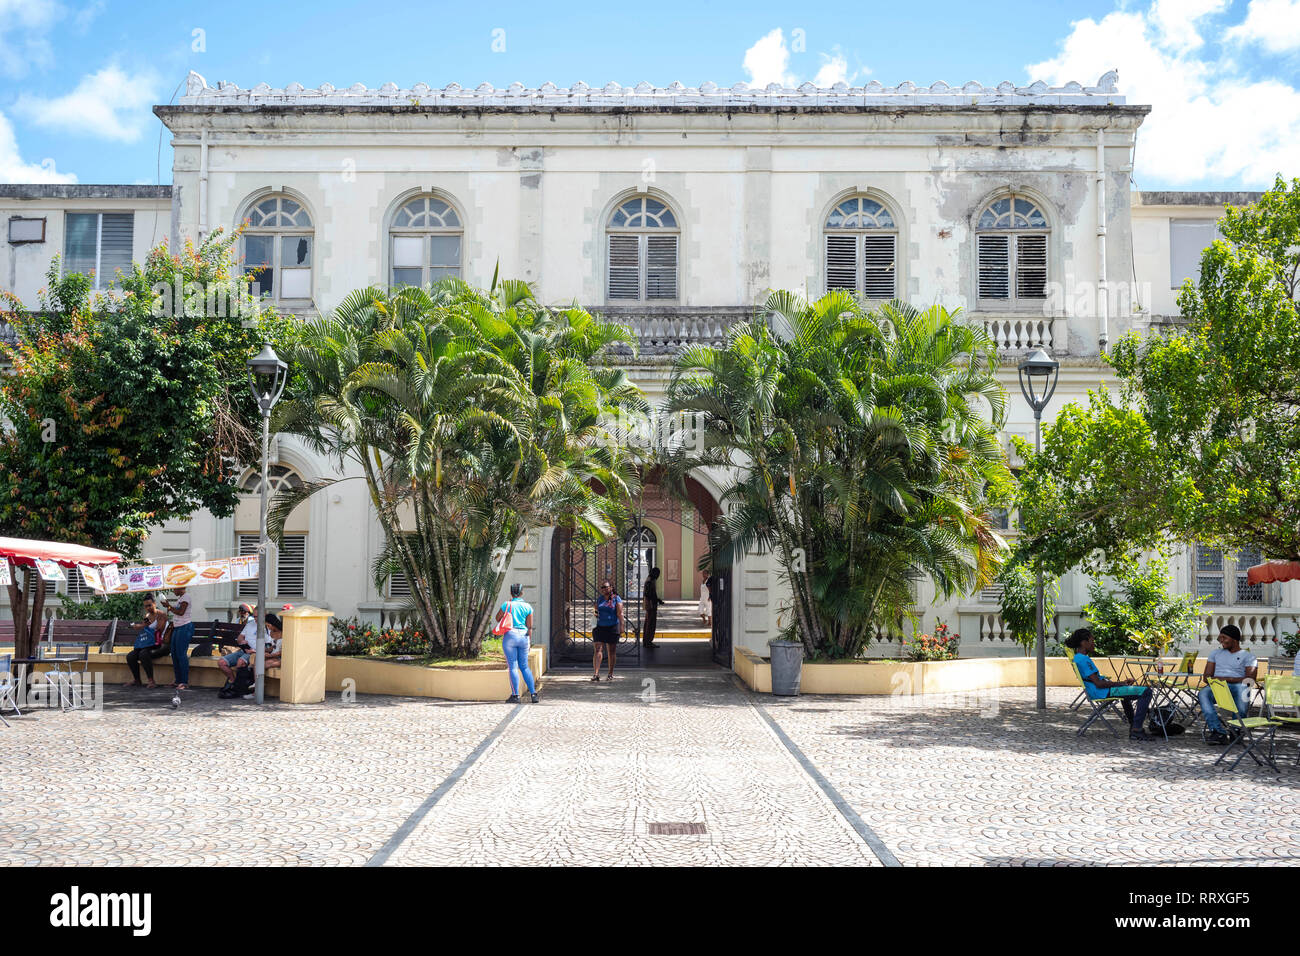 Le Palais de Justice, ora un centro artistico nel centro di Fort-de-France, Martinica Foto Stock